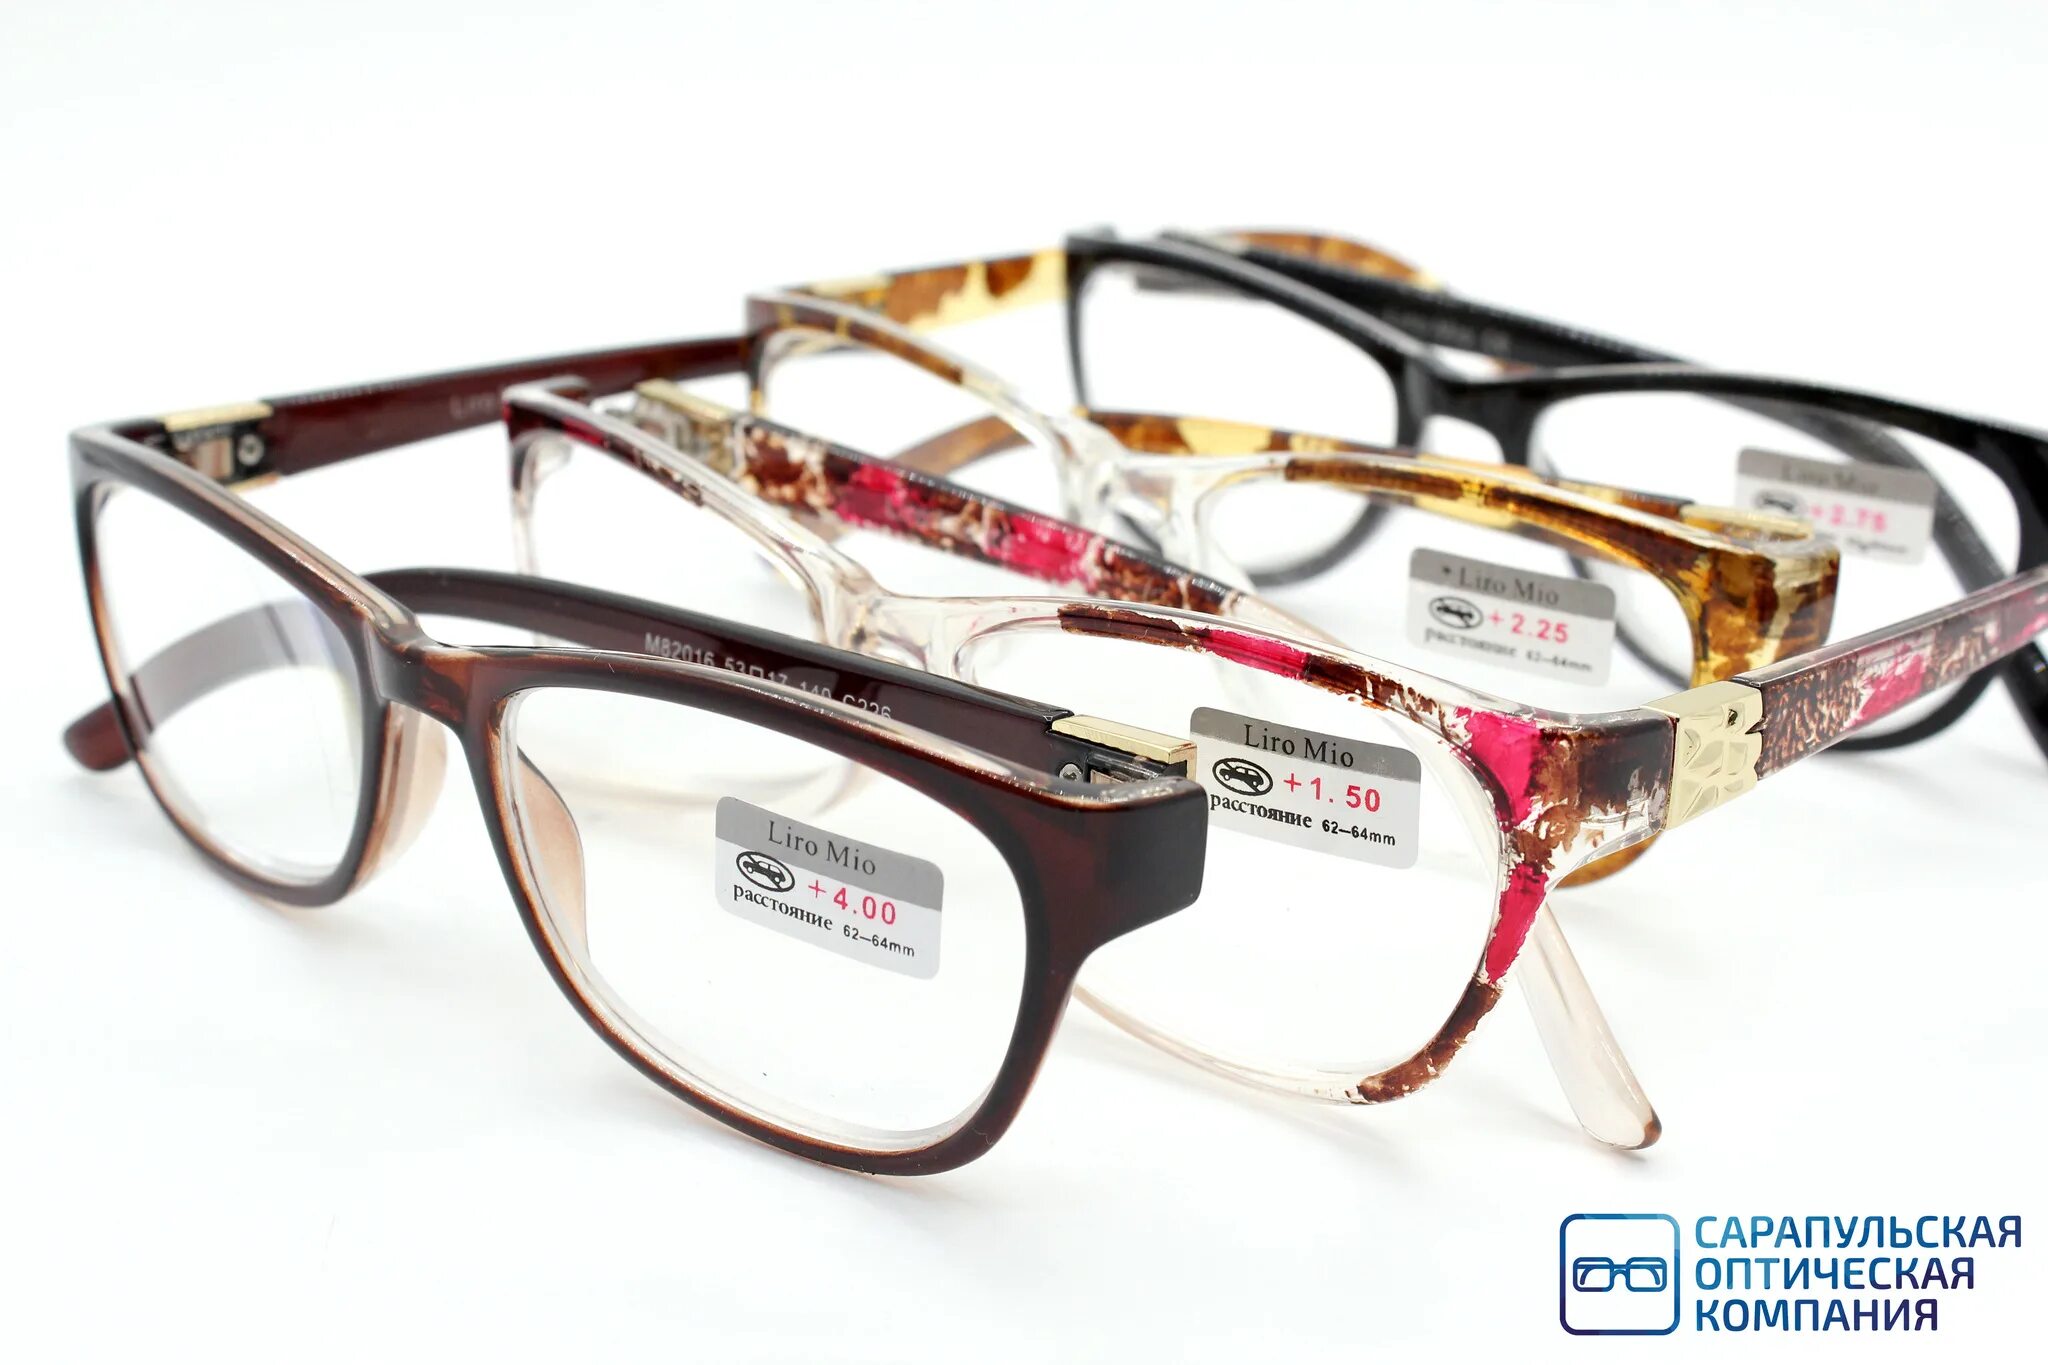 Готовые очки купить в спб. Оправа Liro mio. Оптика очки. Оптические очки. Очки готовые.